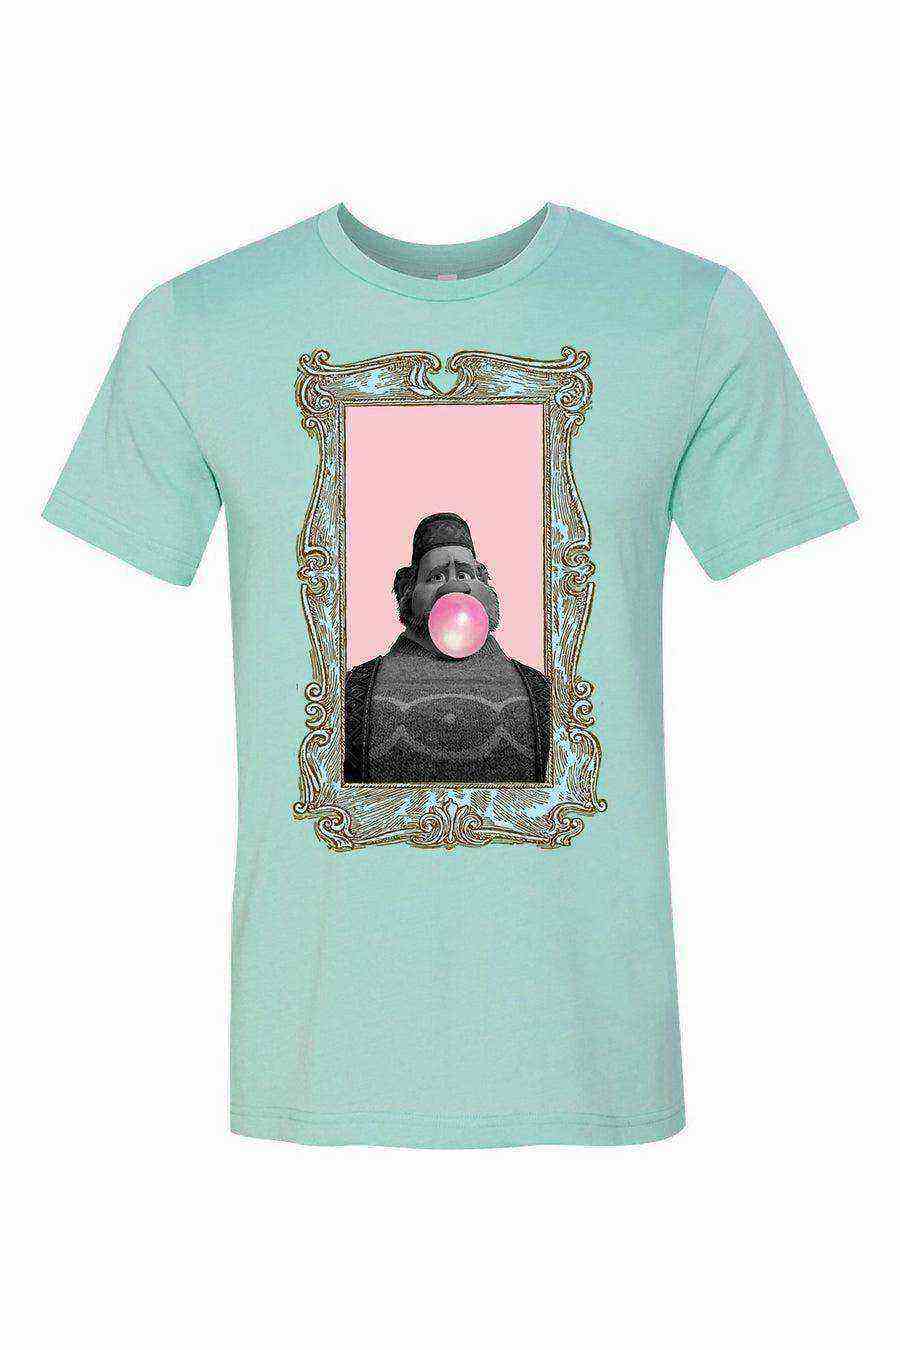 Womens | Oaken Bubblegum Pop Art Shirt | Frozen Shirt - Dylan's Tees